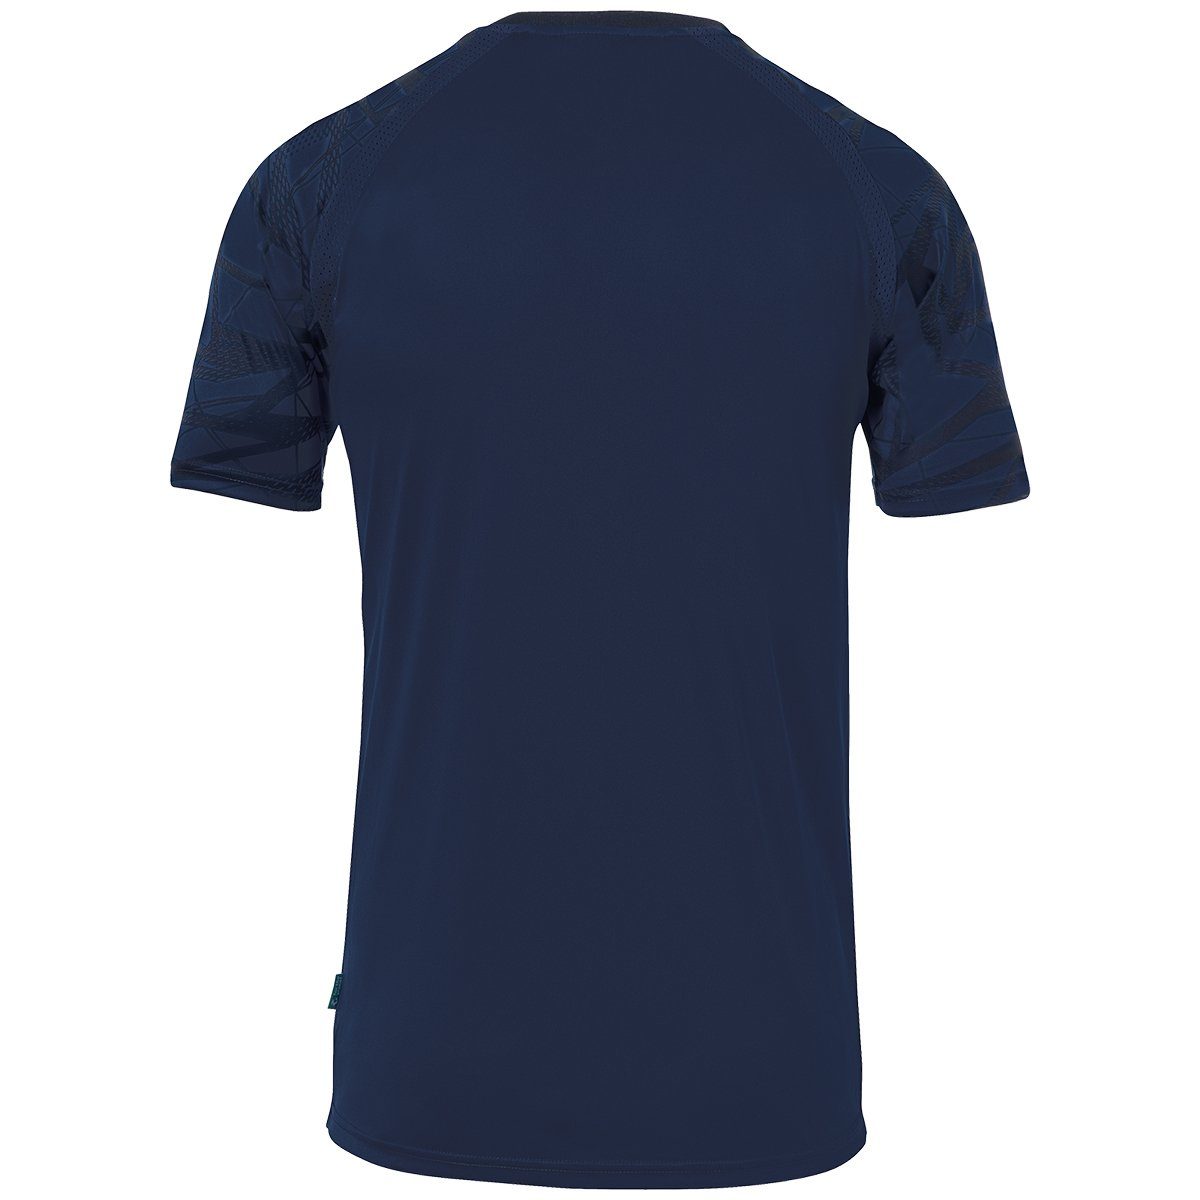 25 marine/marine atmungsaktiv GOAL Trainingsshirt uhlsport KURZARM Trainings-T-Shirt TRIKOT uhlsport